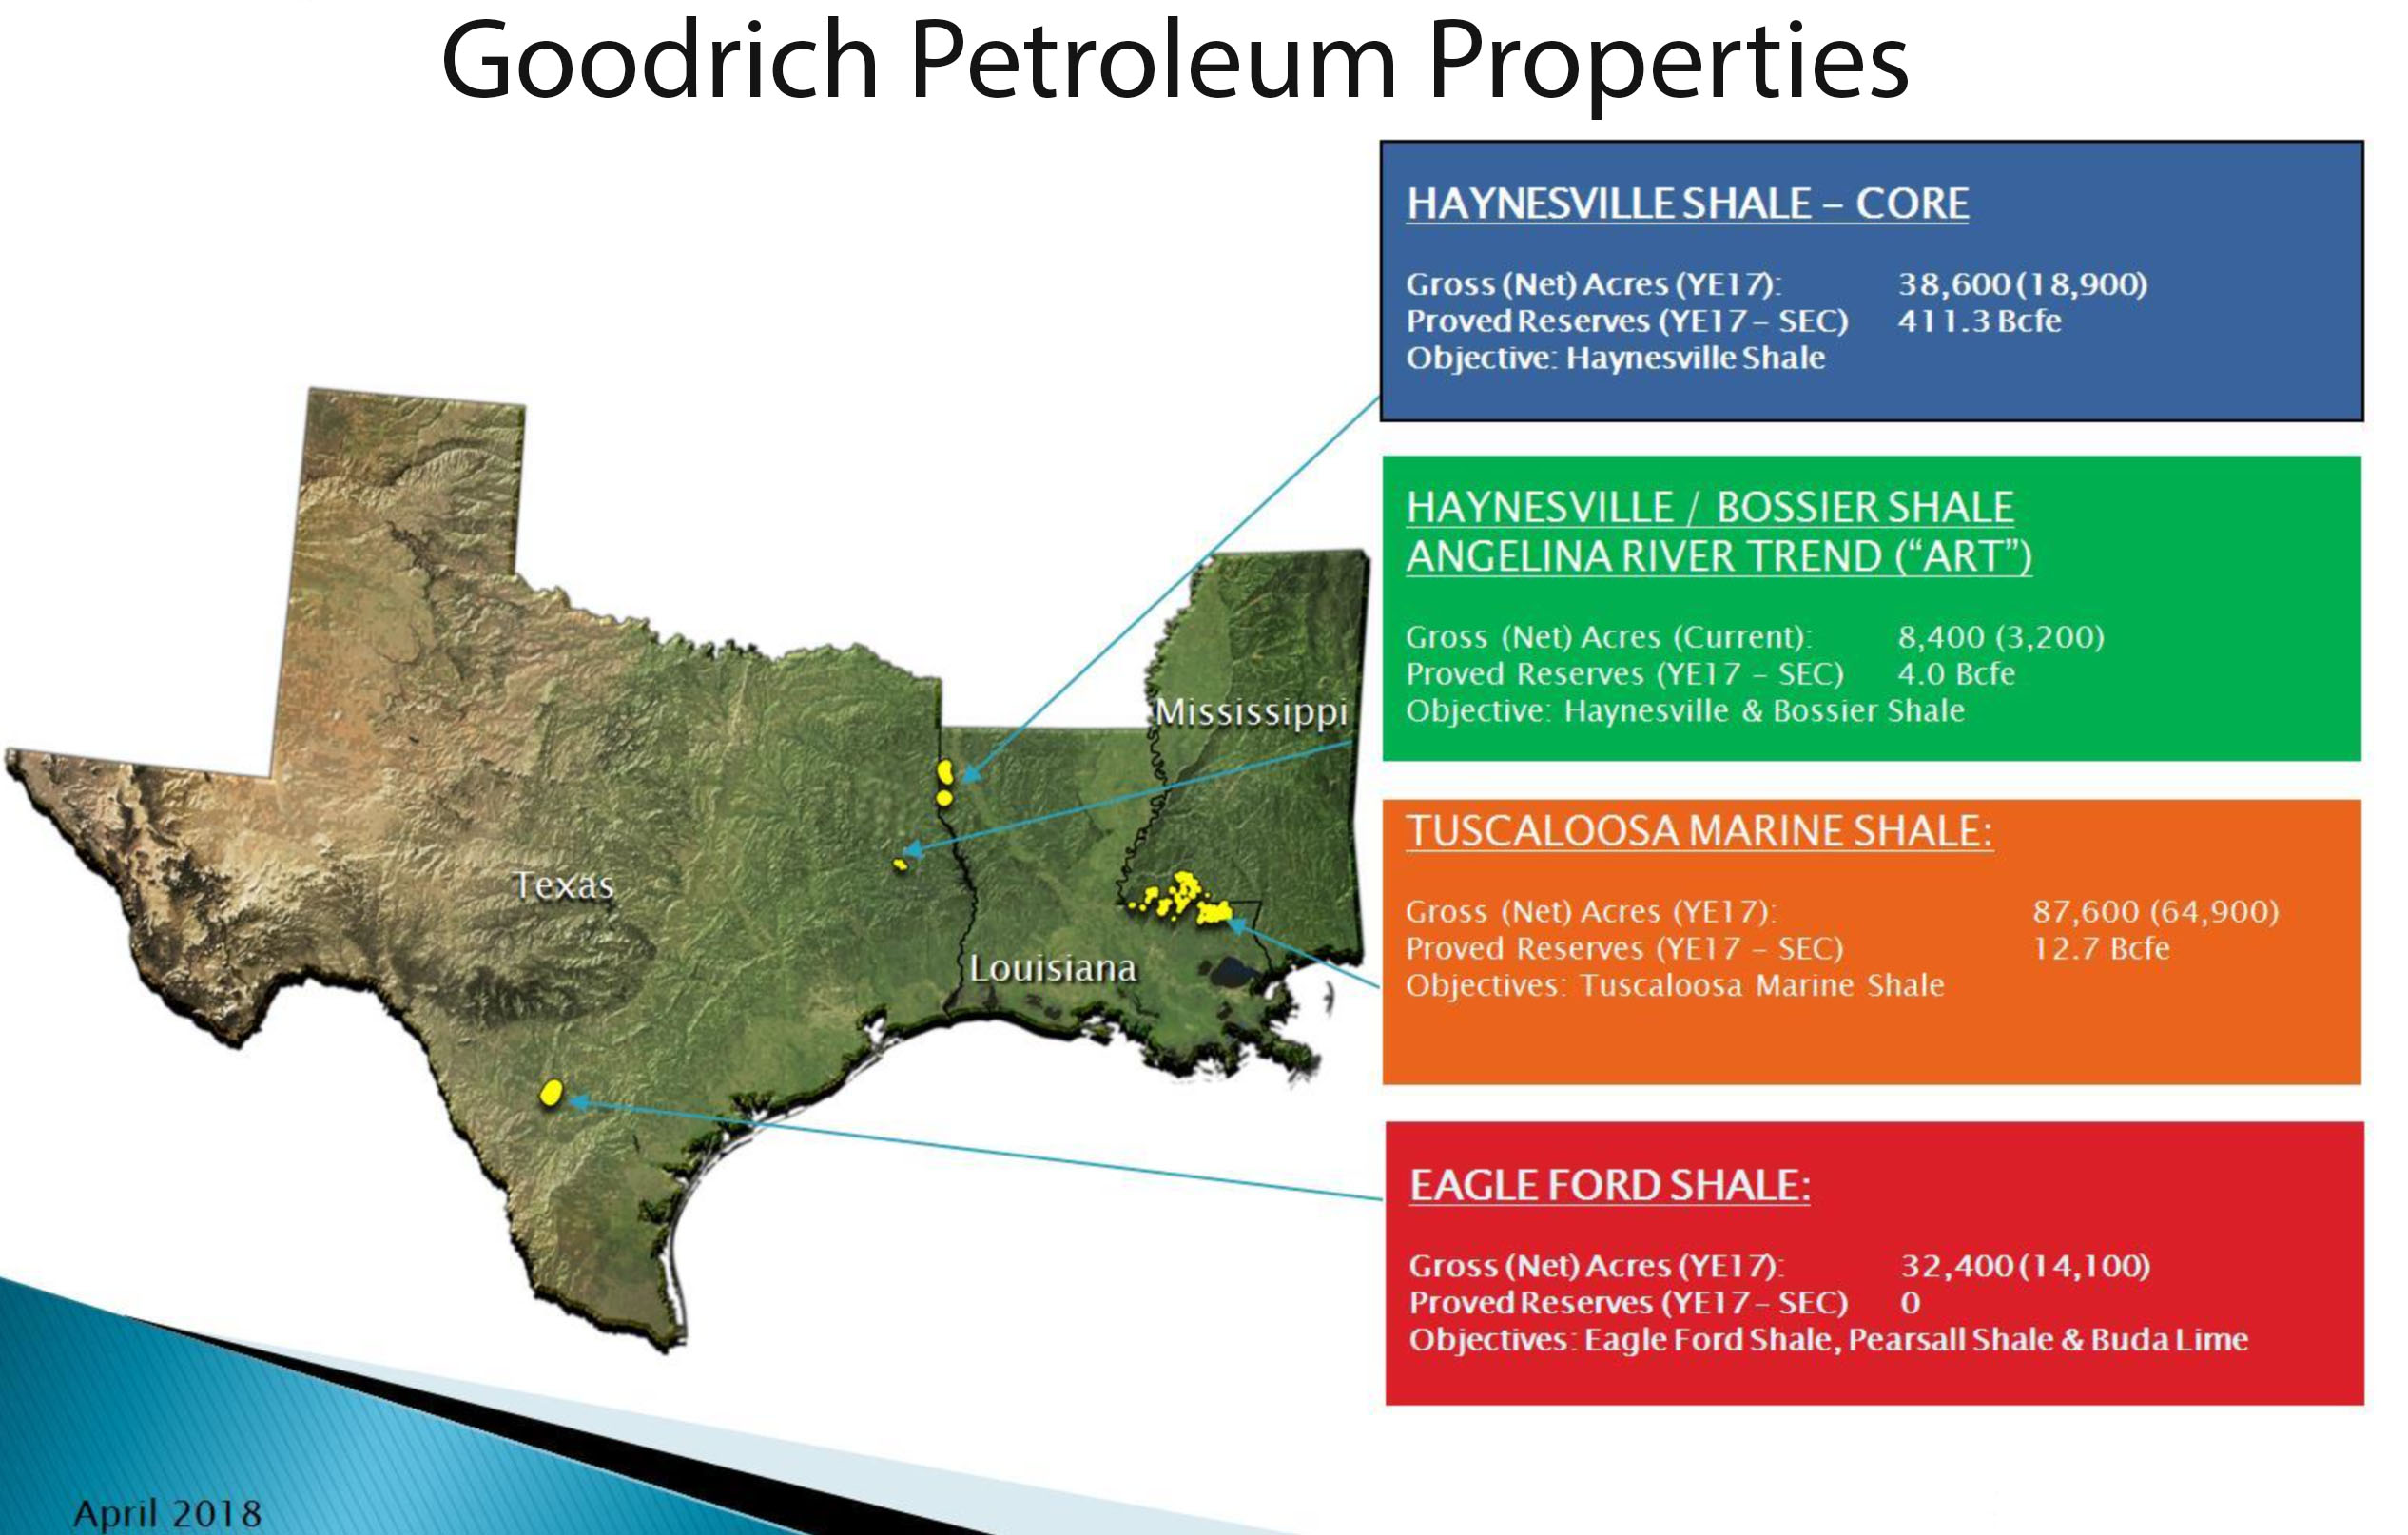 Goodrich Petroleum Properties